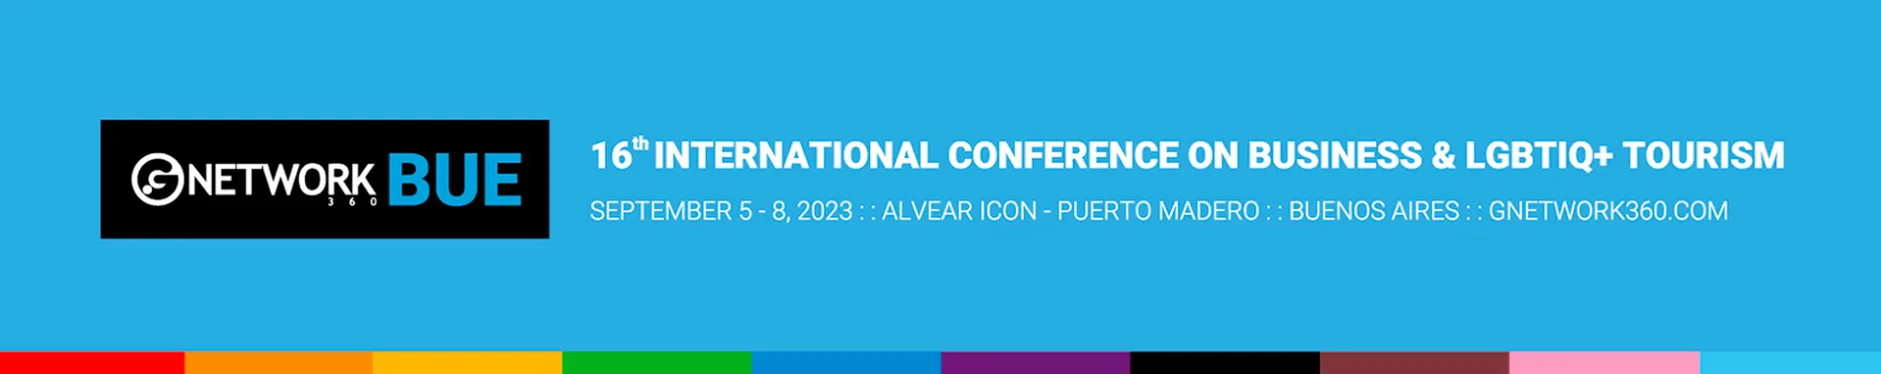 16ta Conferencia Internacional de Negocios y Turismo LGBTQ+